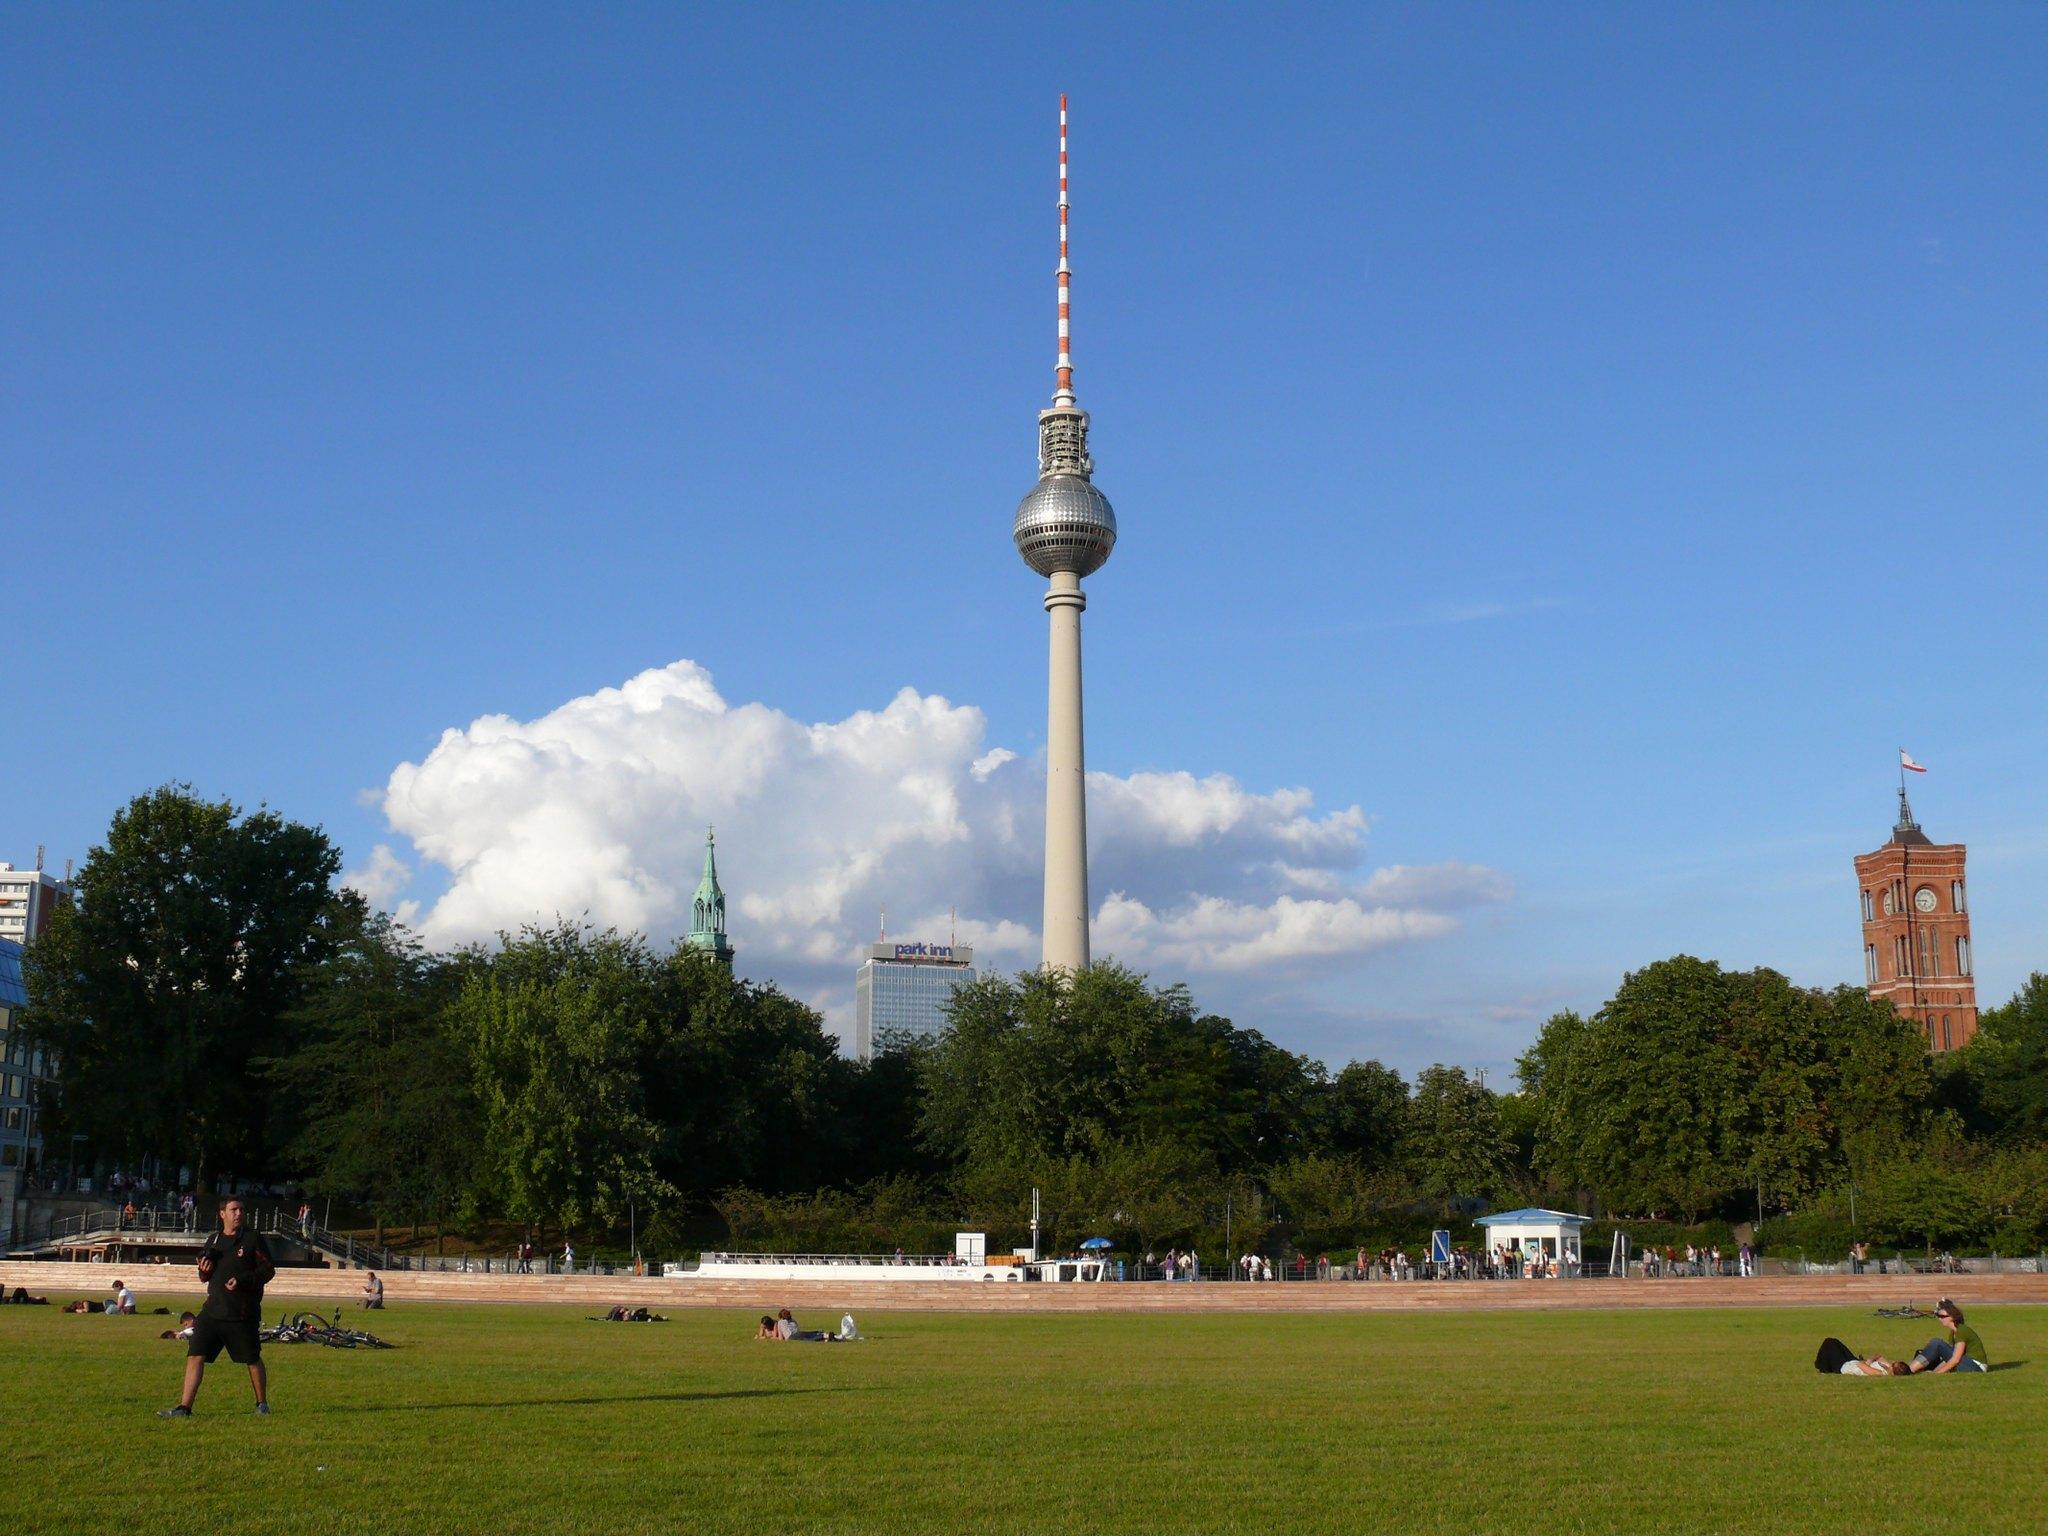 Βερολίνο - Τηλεοπτικός πύργος Βερολίνου «Φέρνσετουρμ»4f5